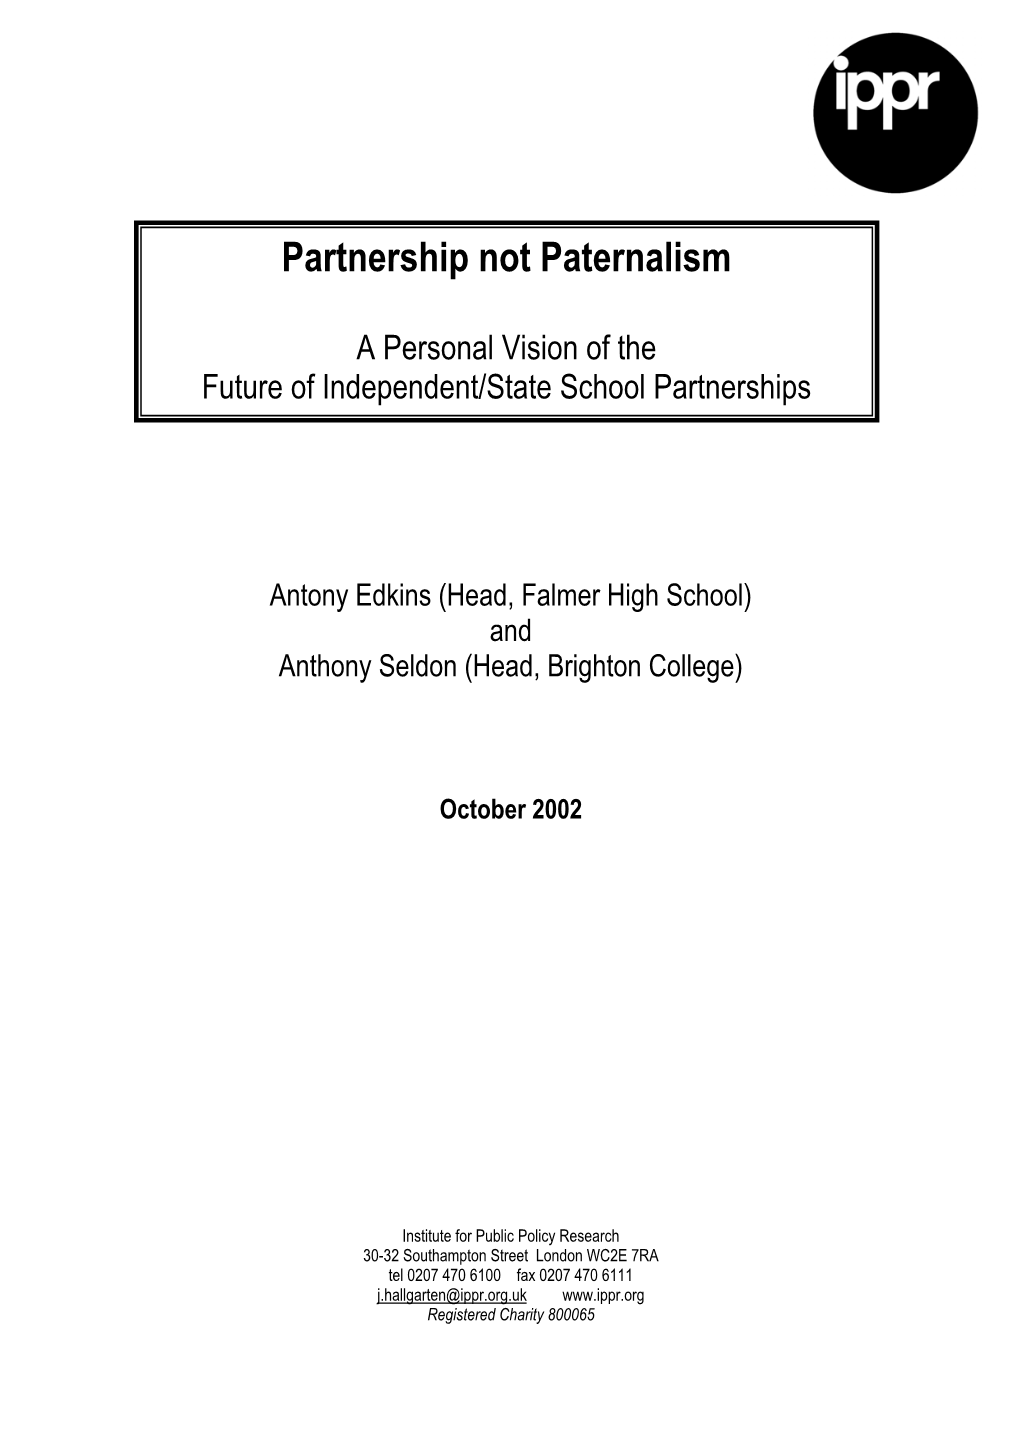 Partnership Not Paternalism